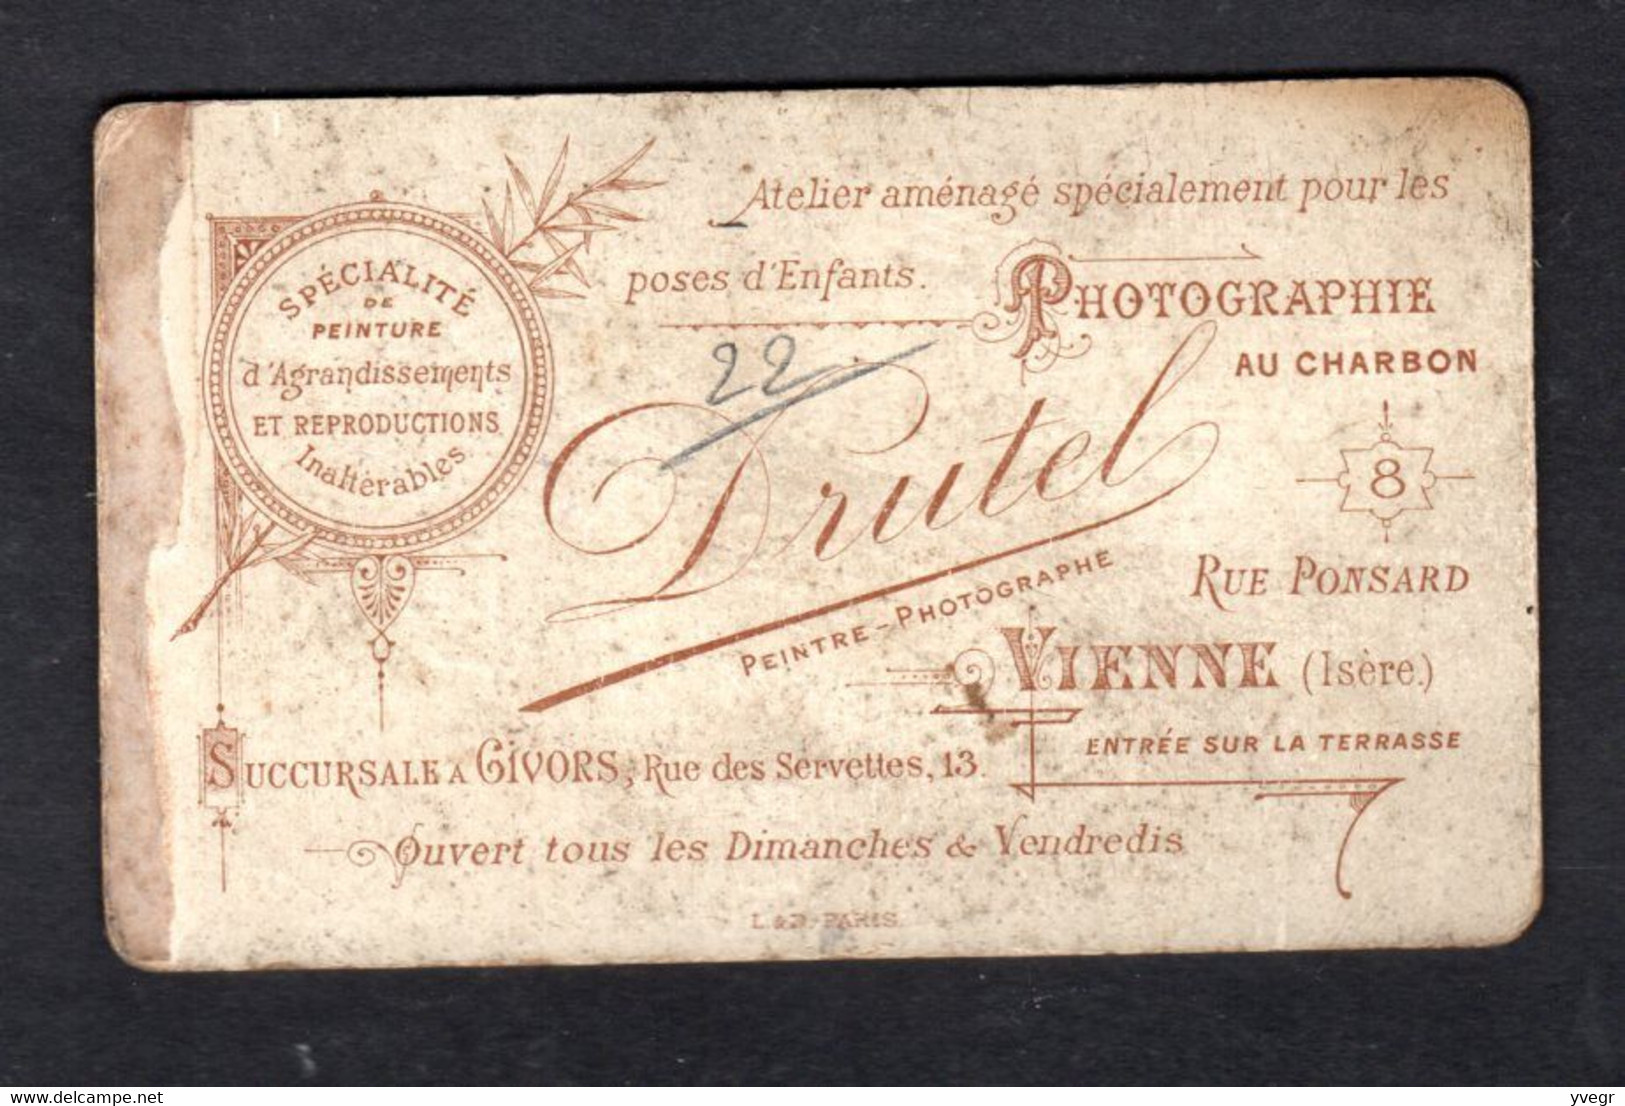 Photo D'une Fillette (Photo Drutel 38 Vienne, Succursale13 Rue Des Servettes Givors ) Sur Carton De 6,5X10,5 Cm - Genealogy